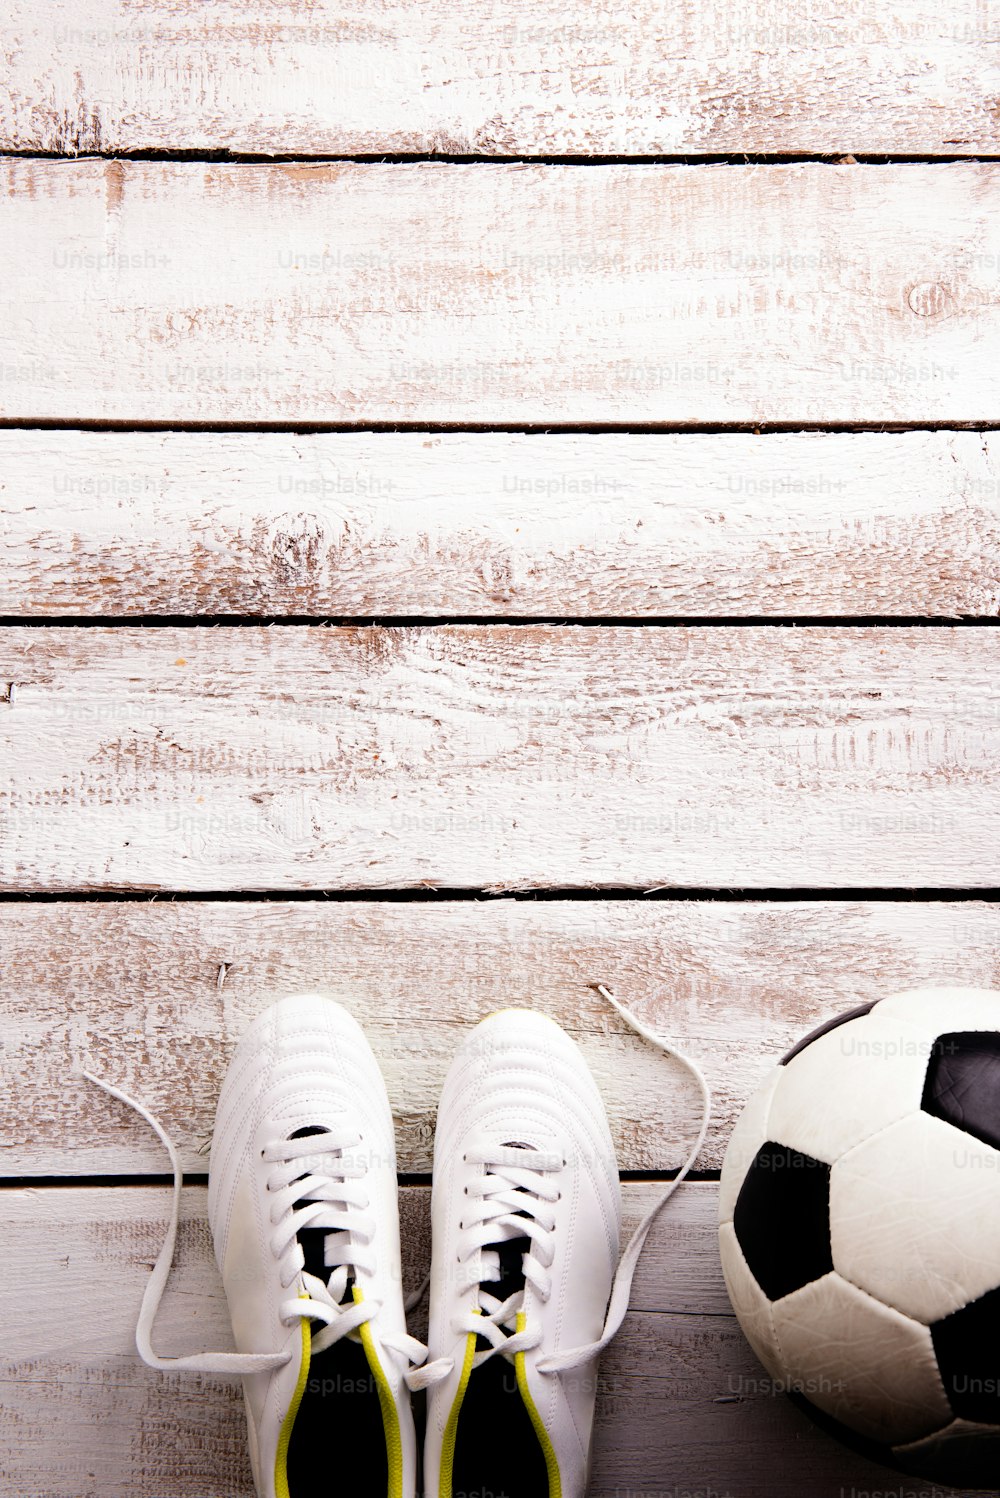 Pallone da calcio, tacchetti contro pavimento in legno, girato in studio su sfondo bianco. Flat lay, spazio di copia